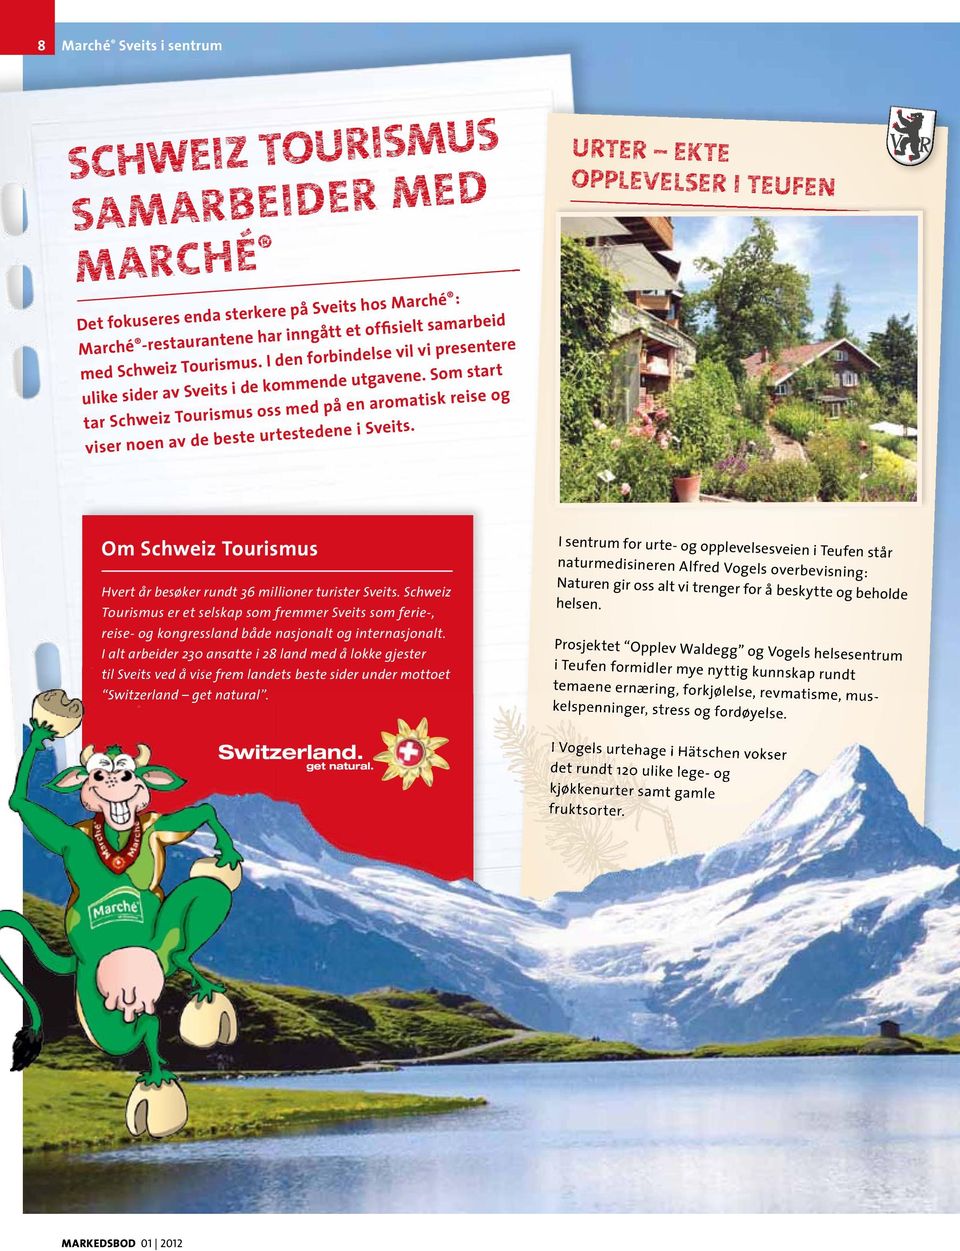 Urter ekte opplevelser i teufen Om Schweiz tourismus Hvert år besøker rundt 36 millioner turister Sveits.